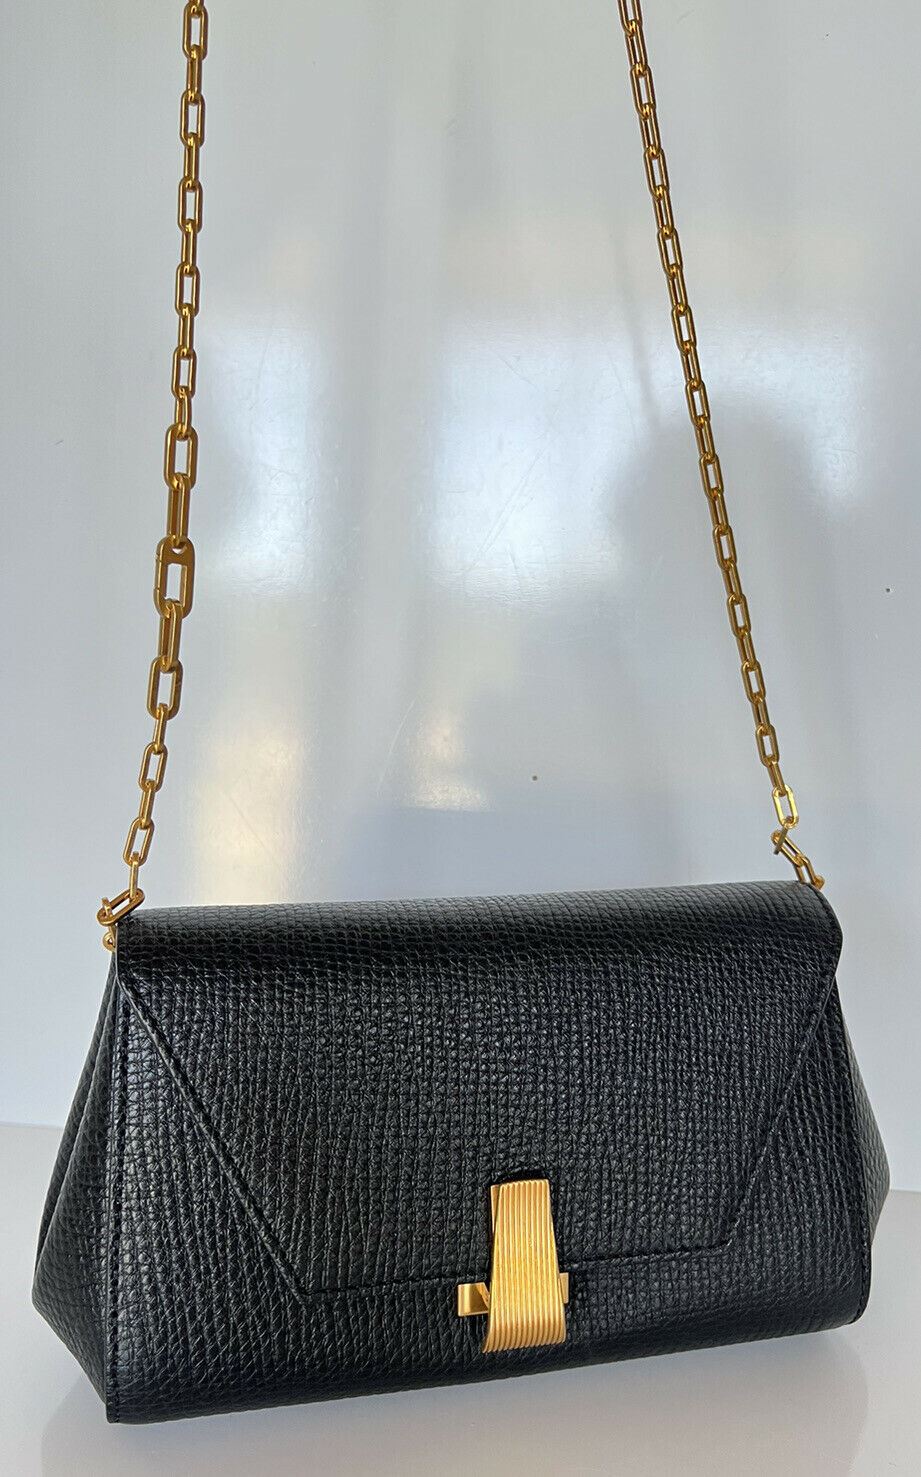 Мини-сумка Bottega Veneta из зернистой фактурной кожи 608798 Италия NWT $1850 